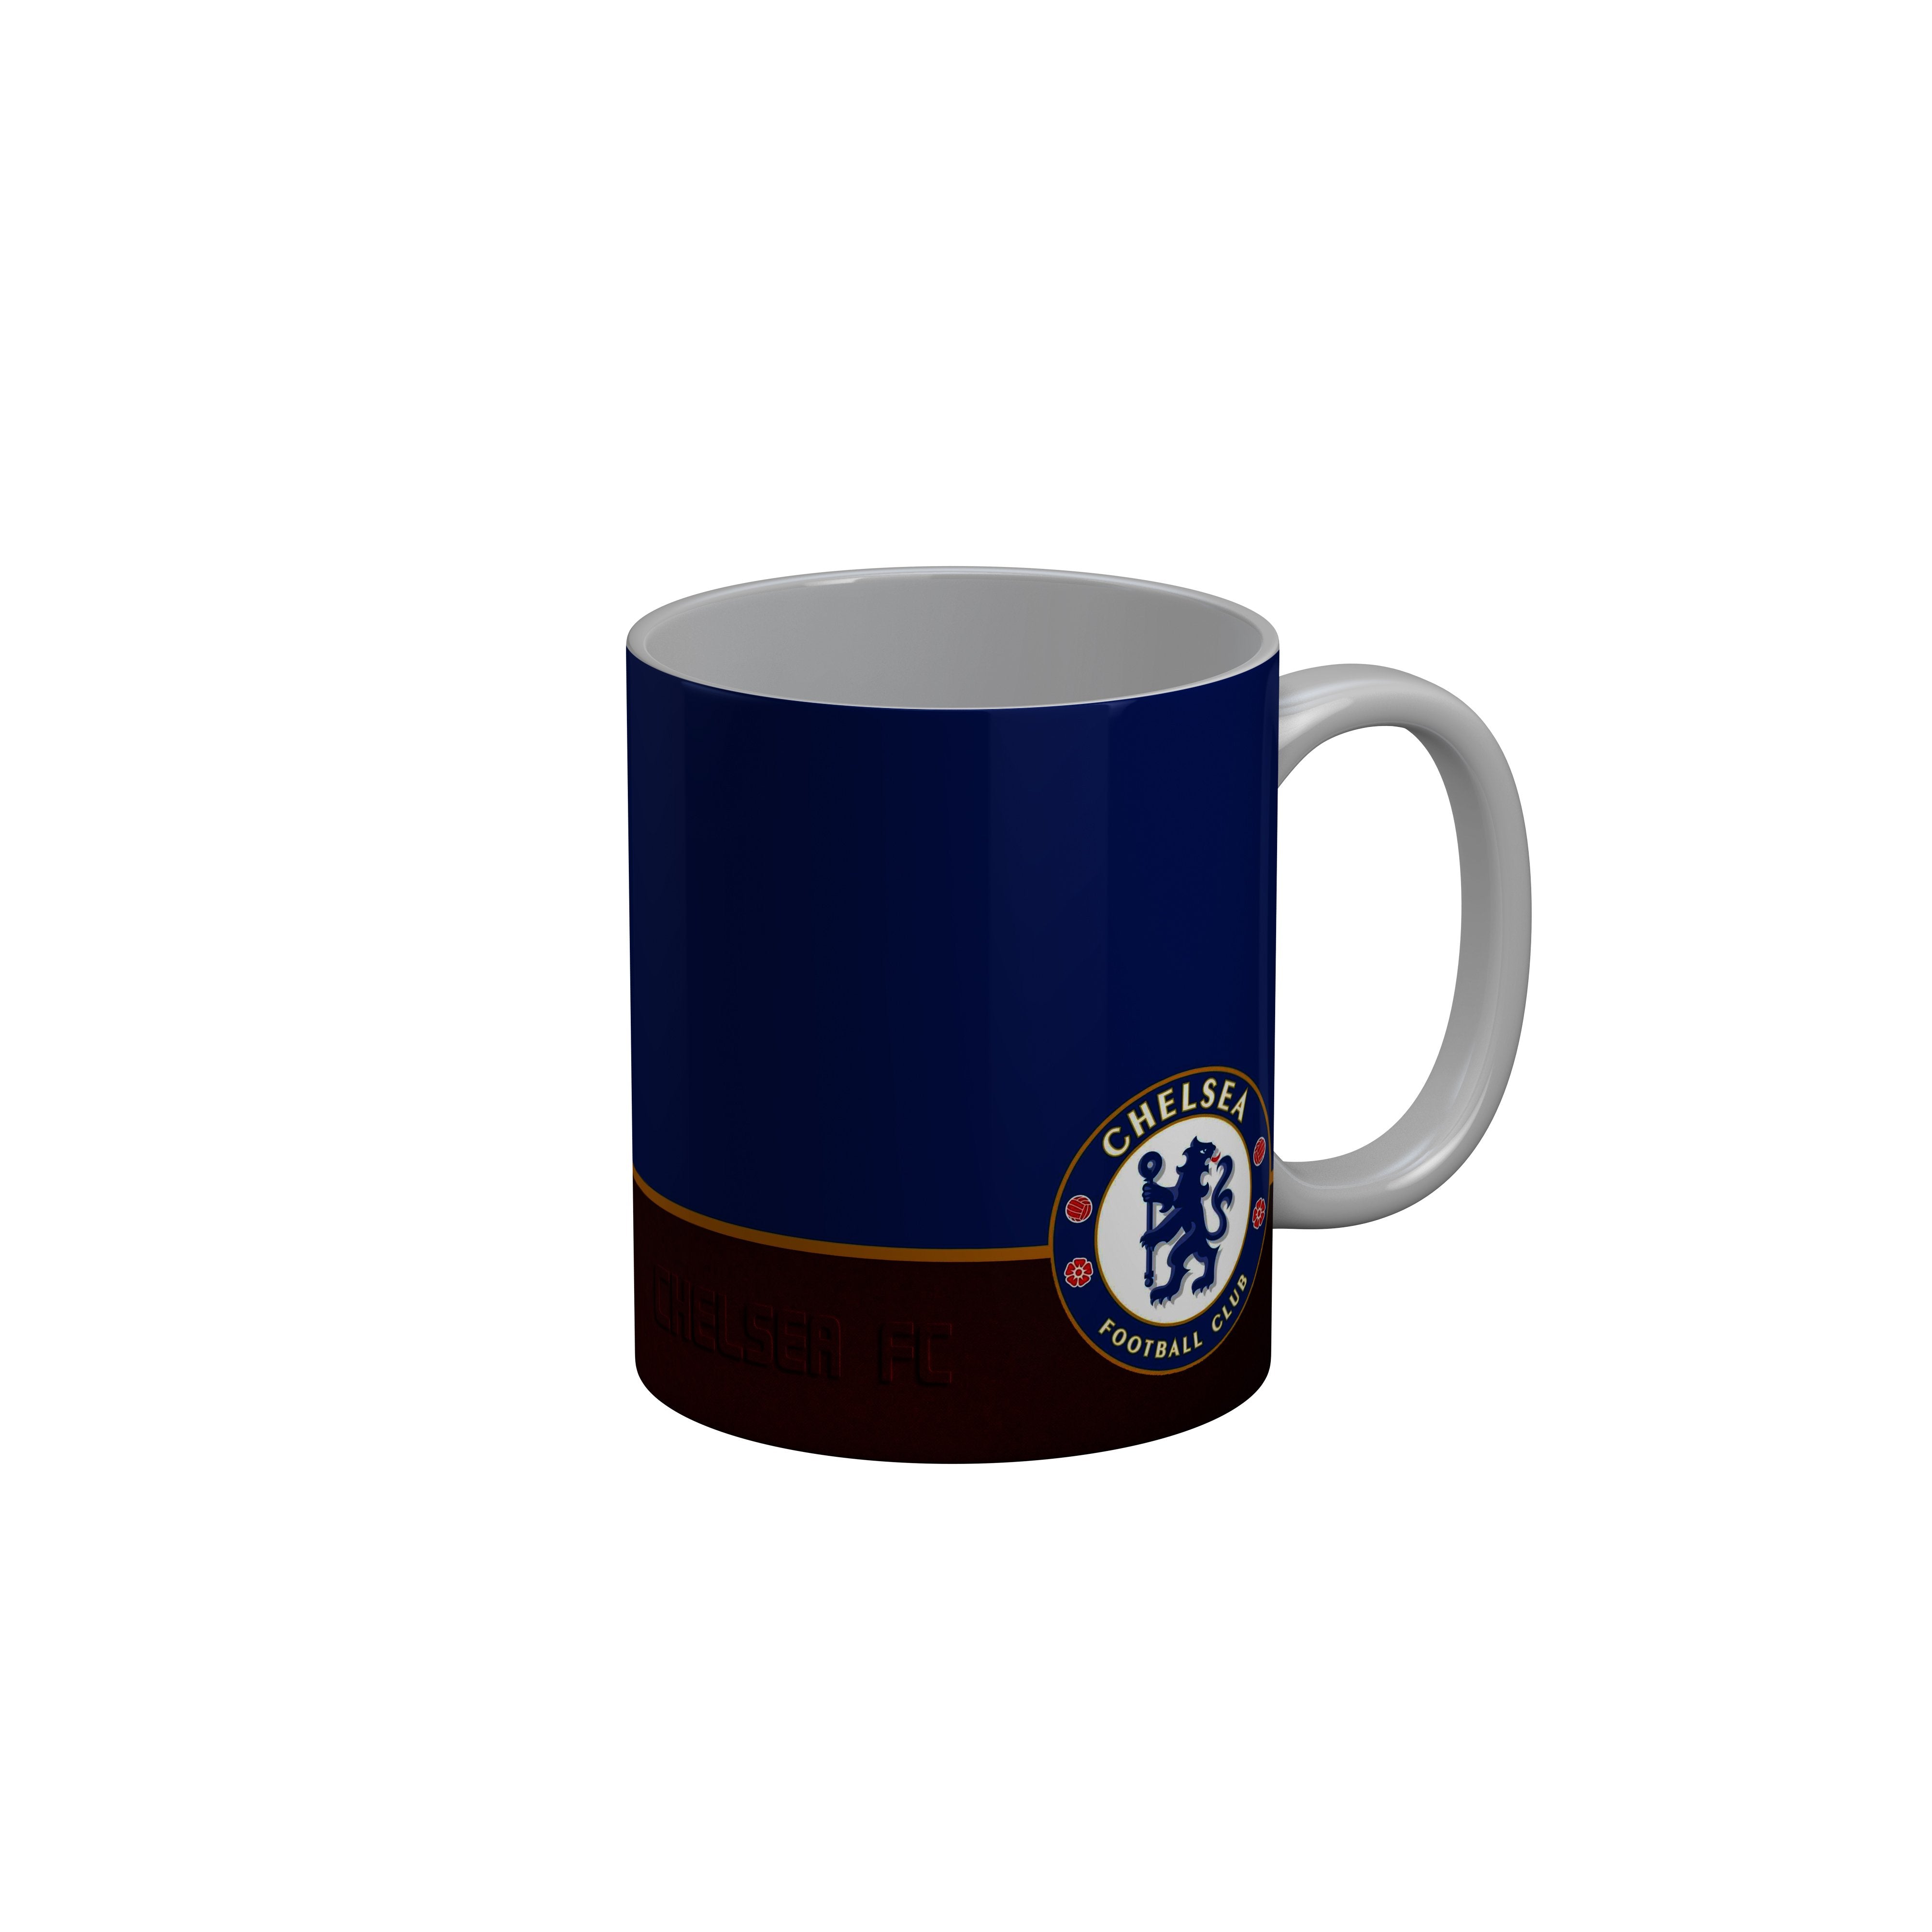 FashionRazor Chelsea Football Club Blue Red Ceramic Coffee Mug